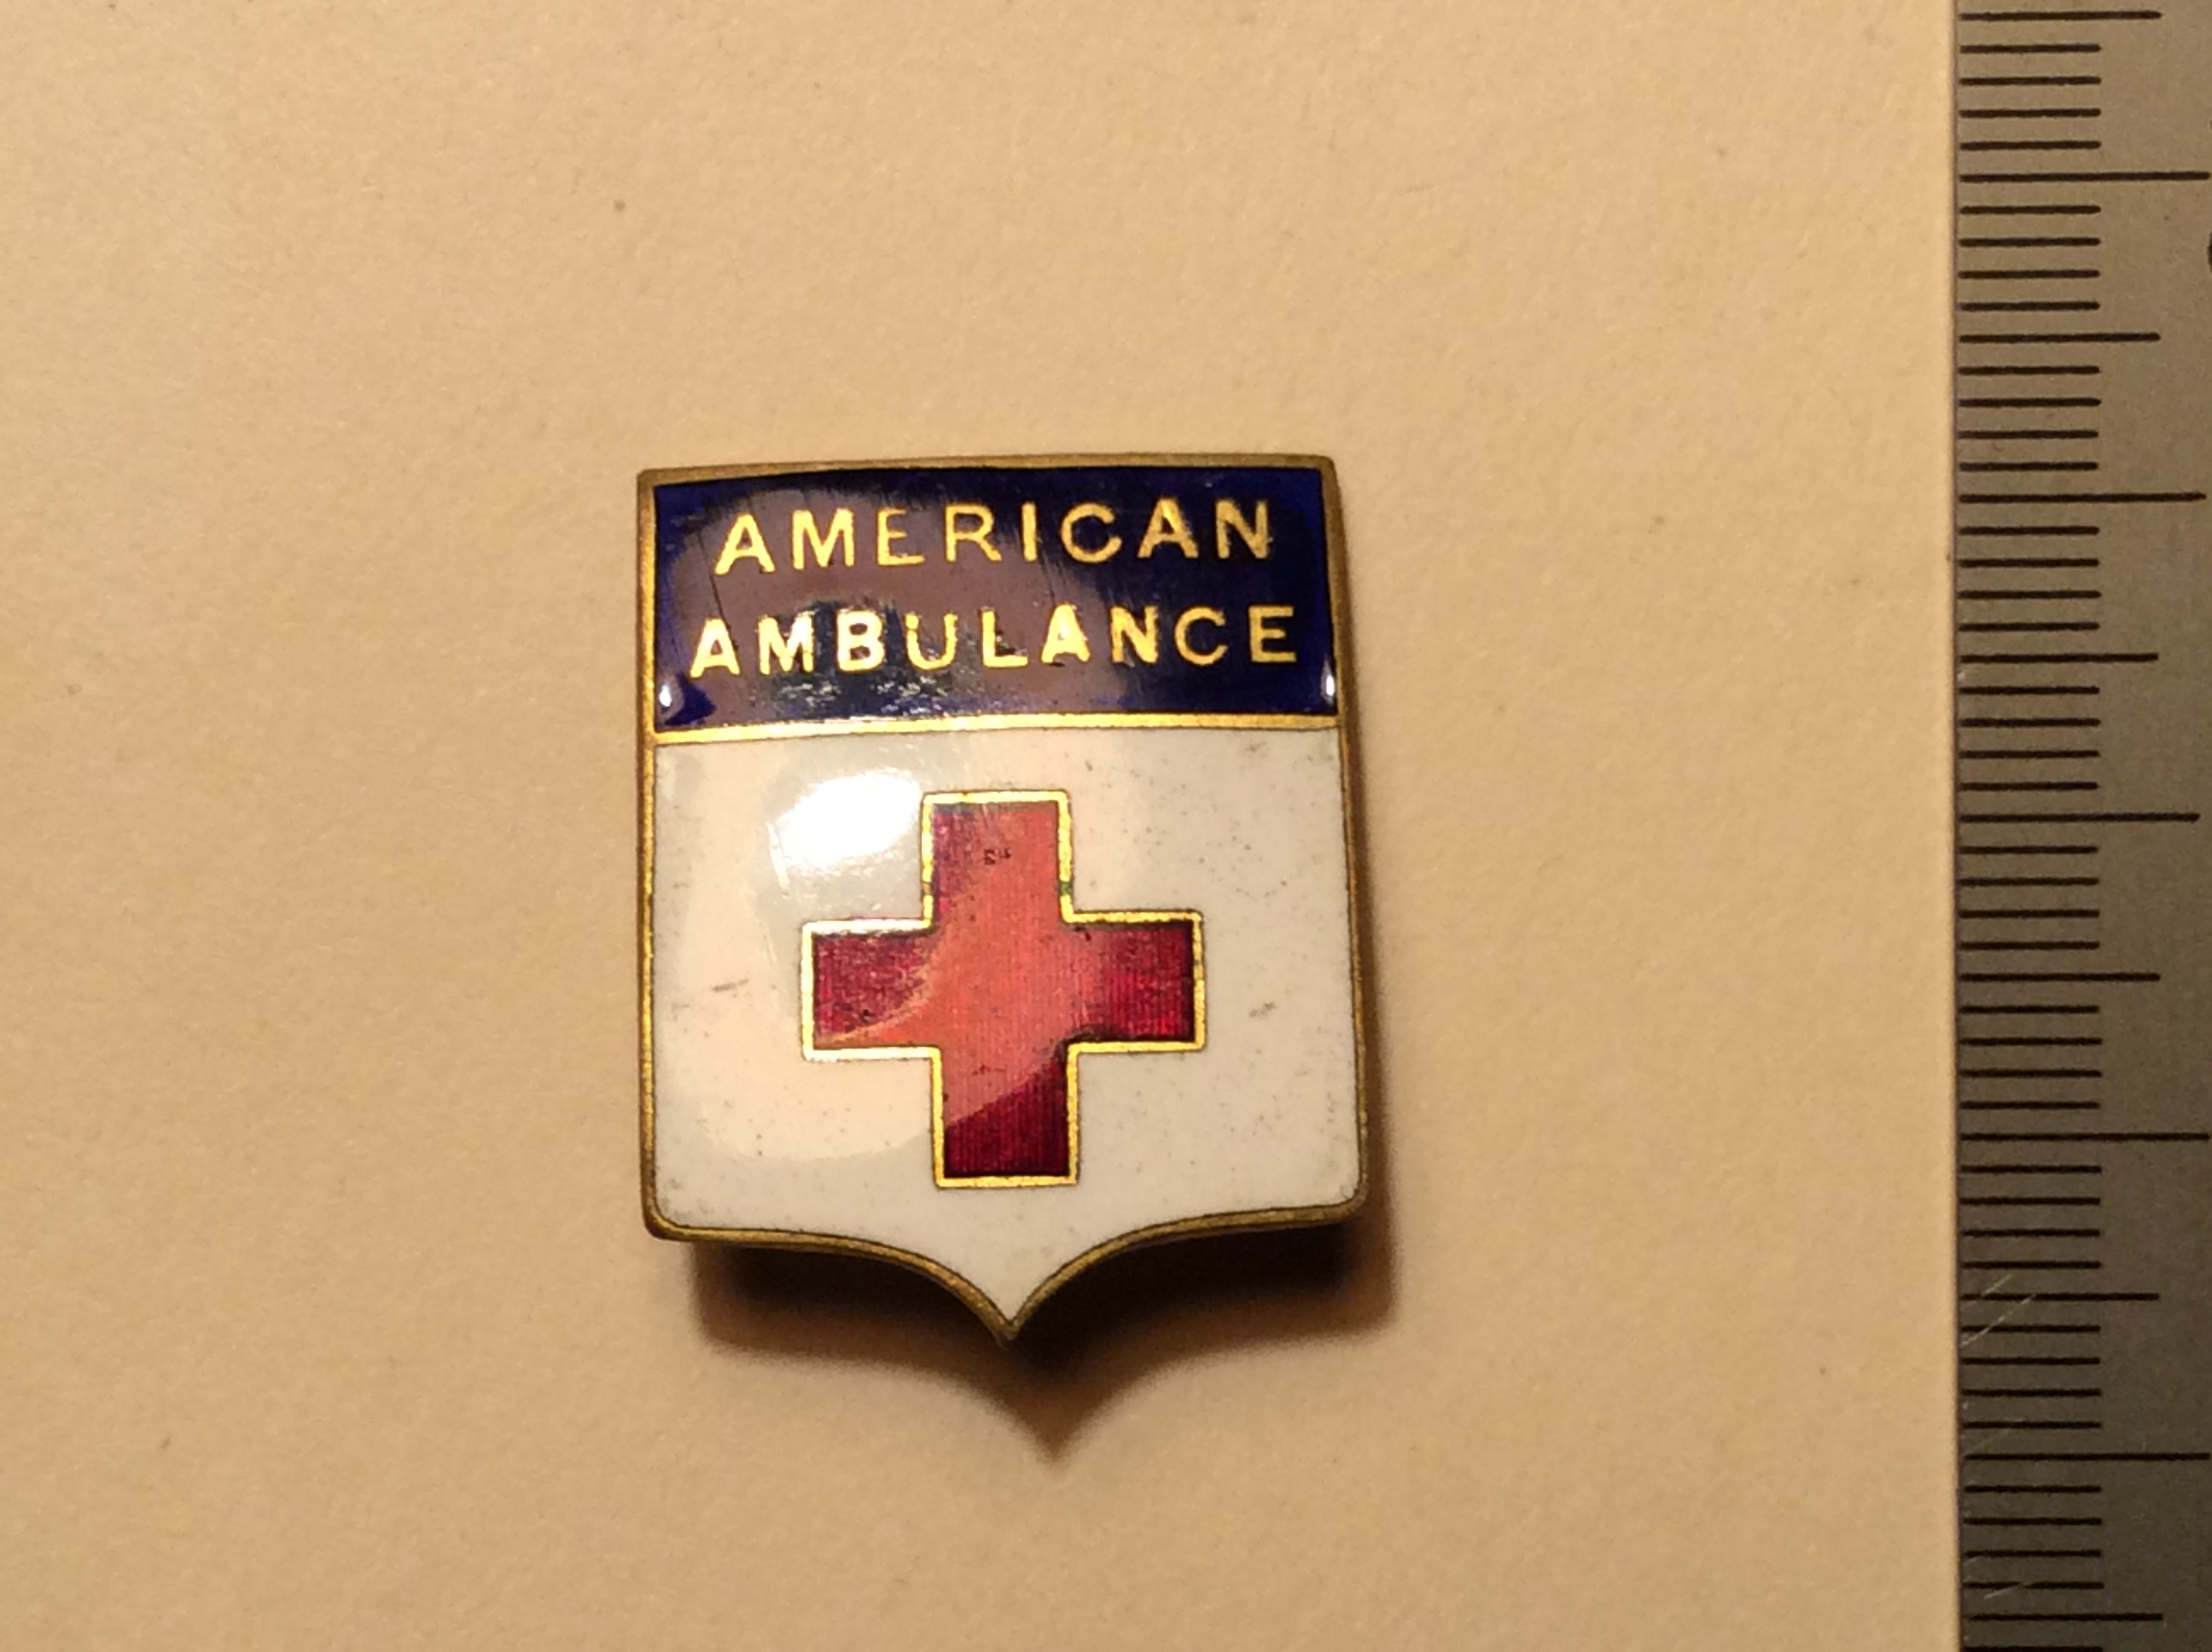 American Ambulance Nurse Pin.jpeg